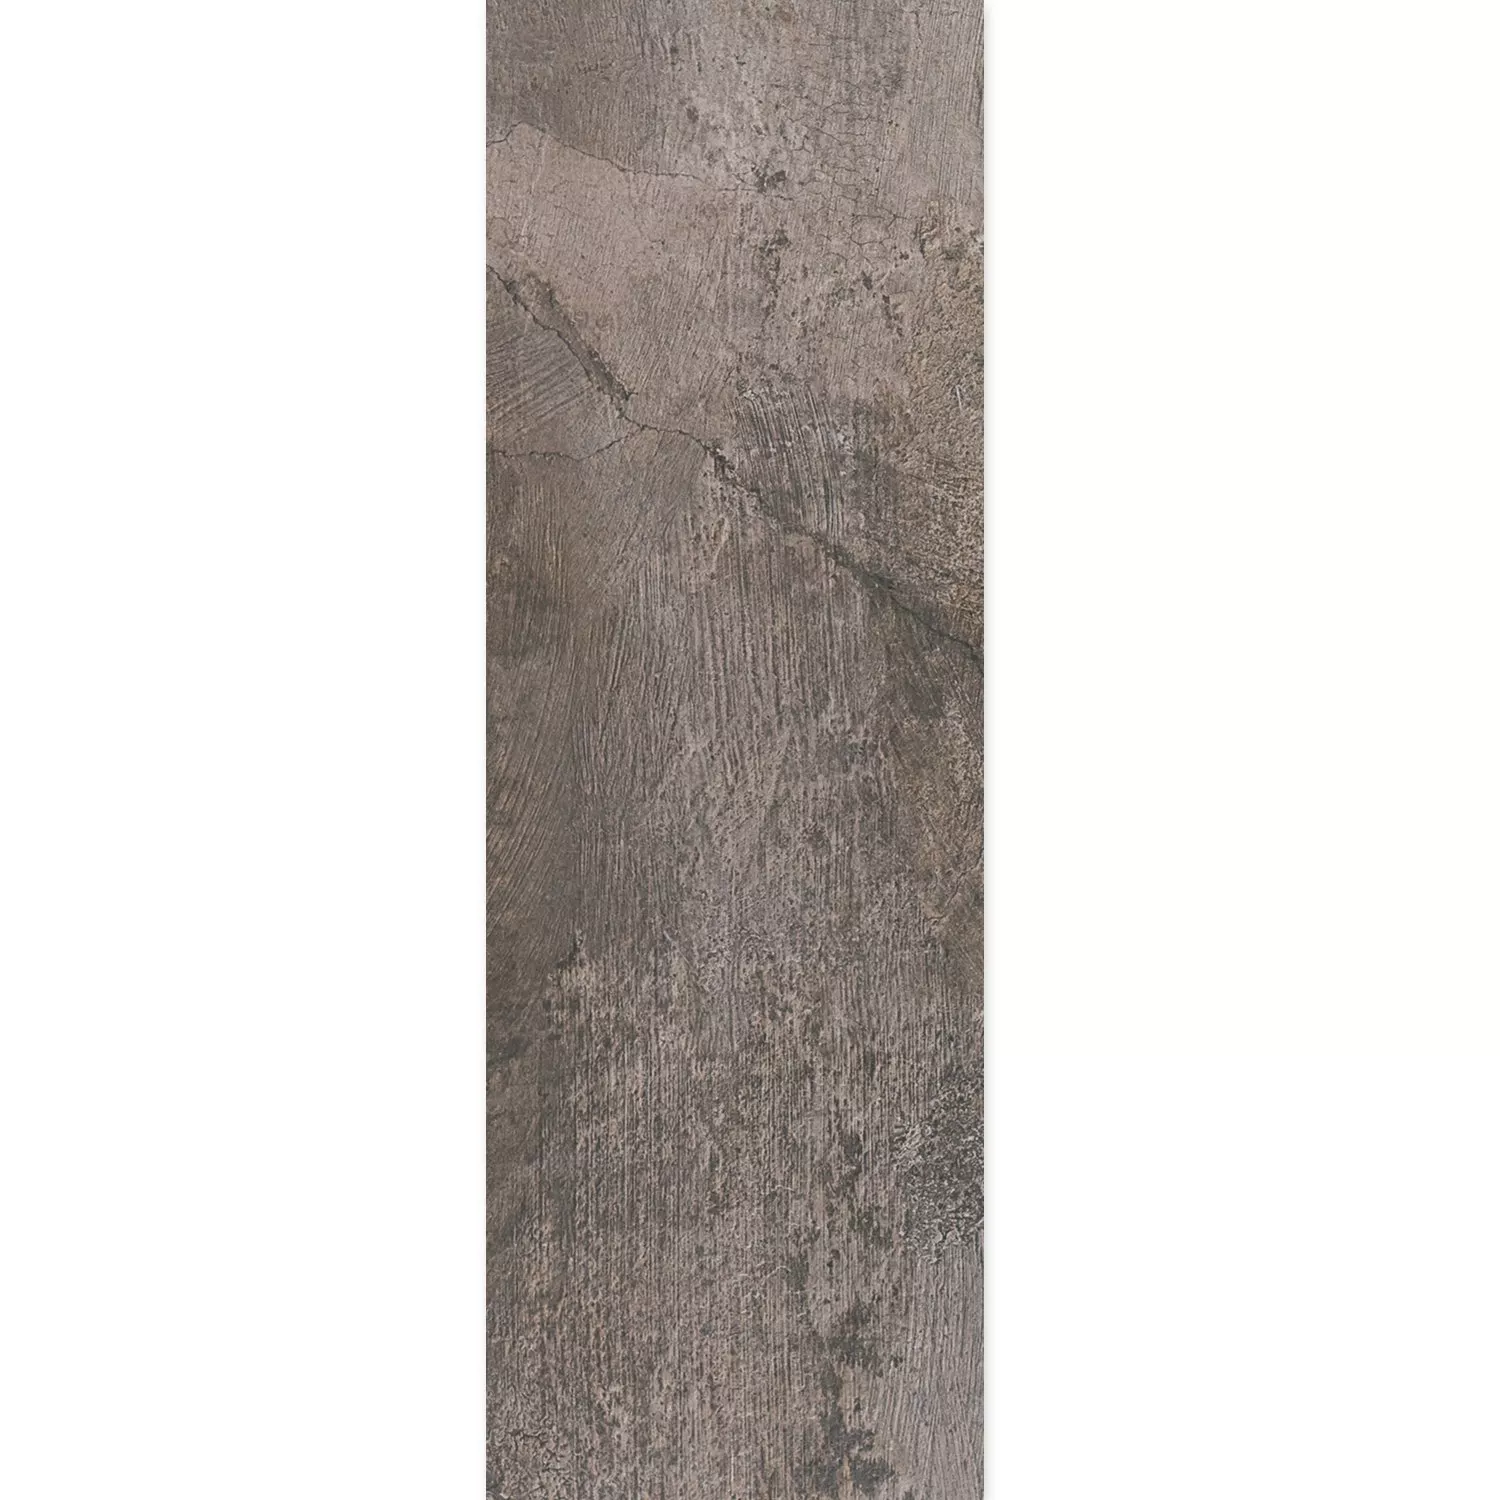 Próbka Płytki Podłogowe Kamień Optyka Polaris R10 Antracyt 30x120cm